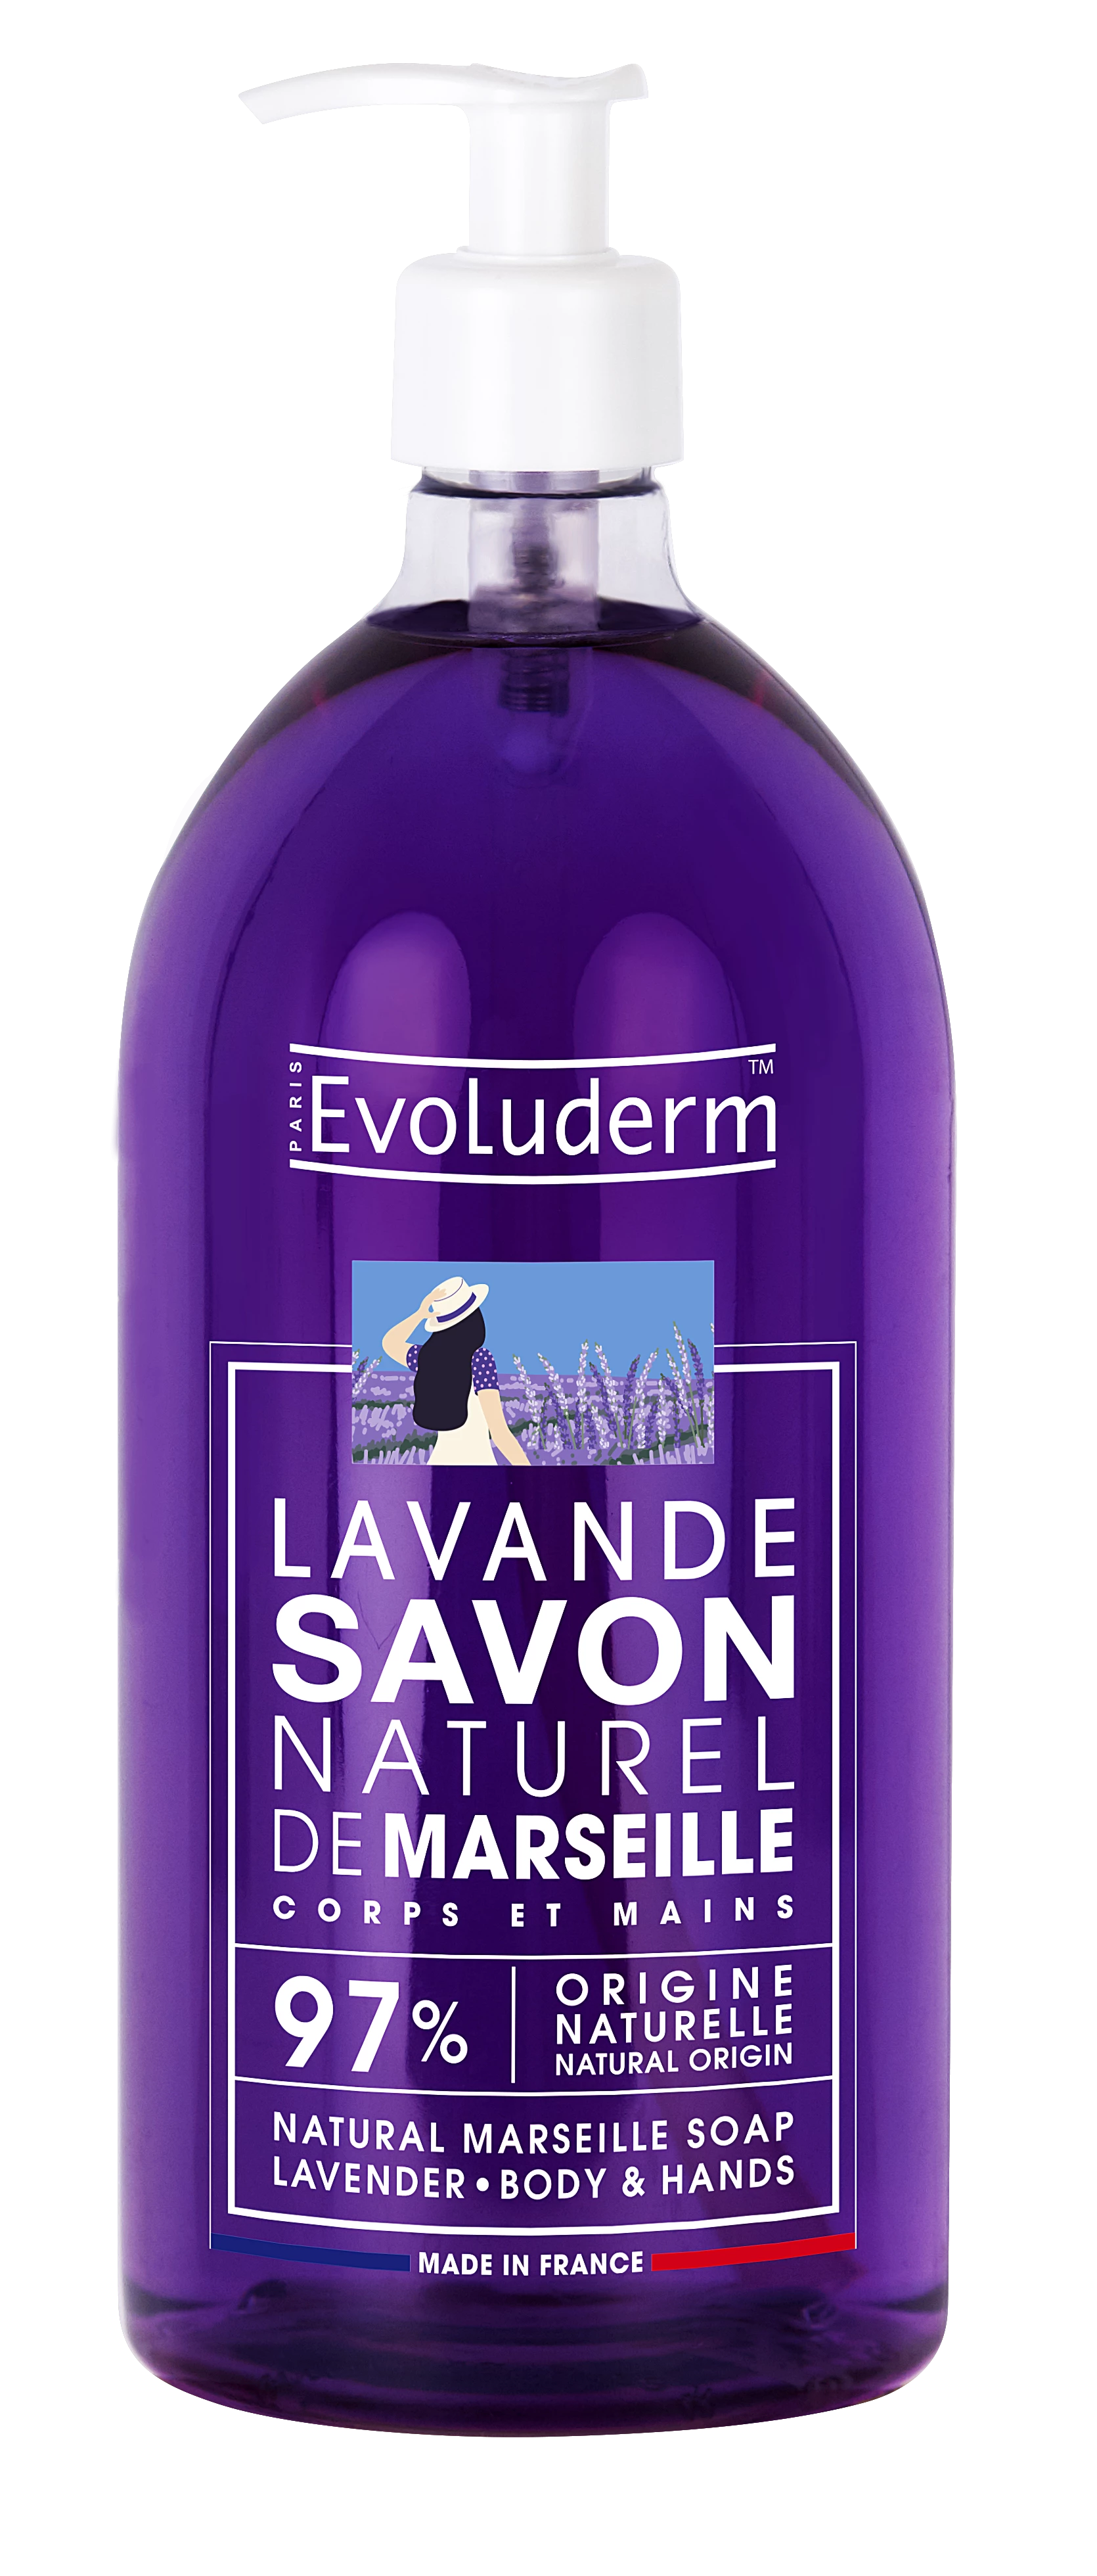 ラベンダー天然液体マルセイユ石鹸、1L - EVOLUDERM